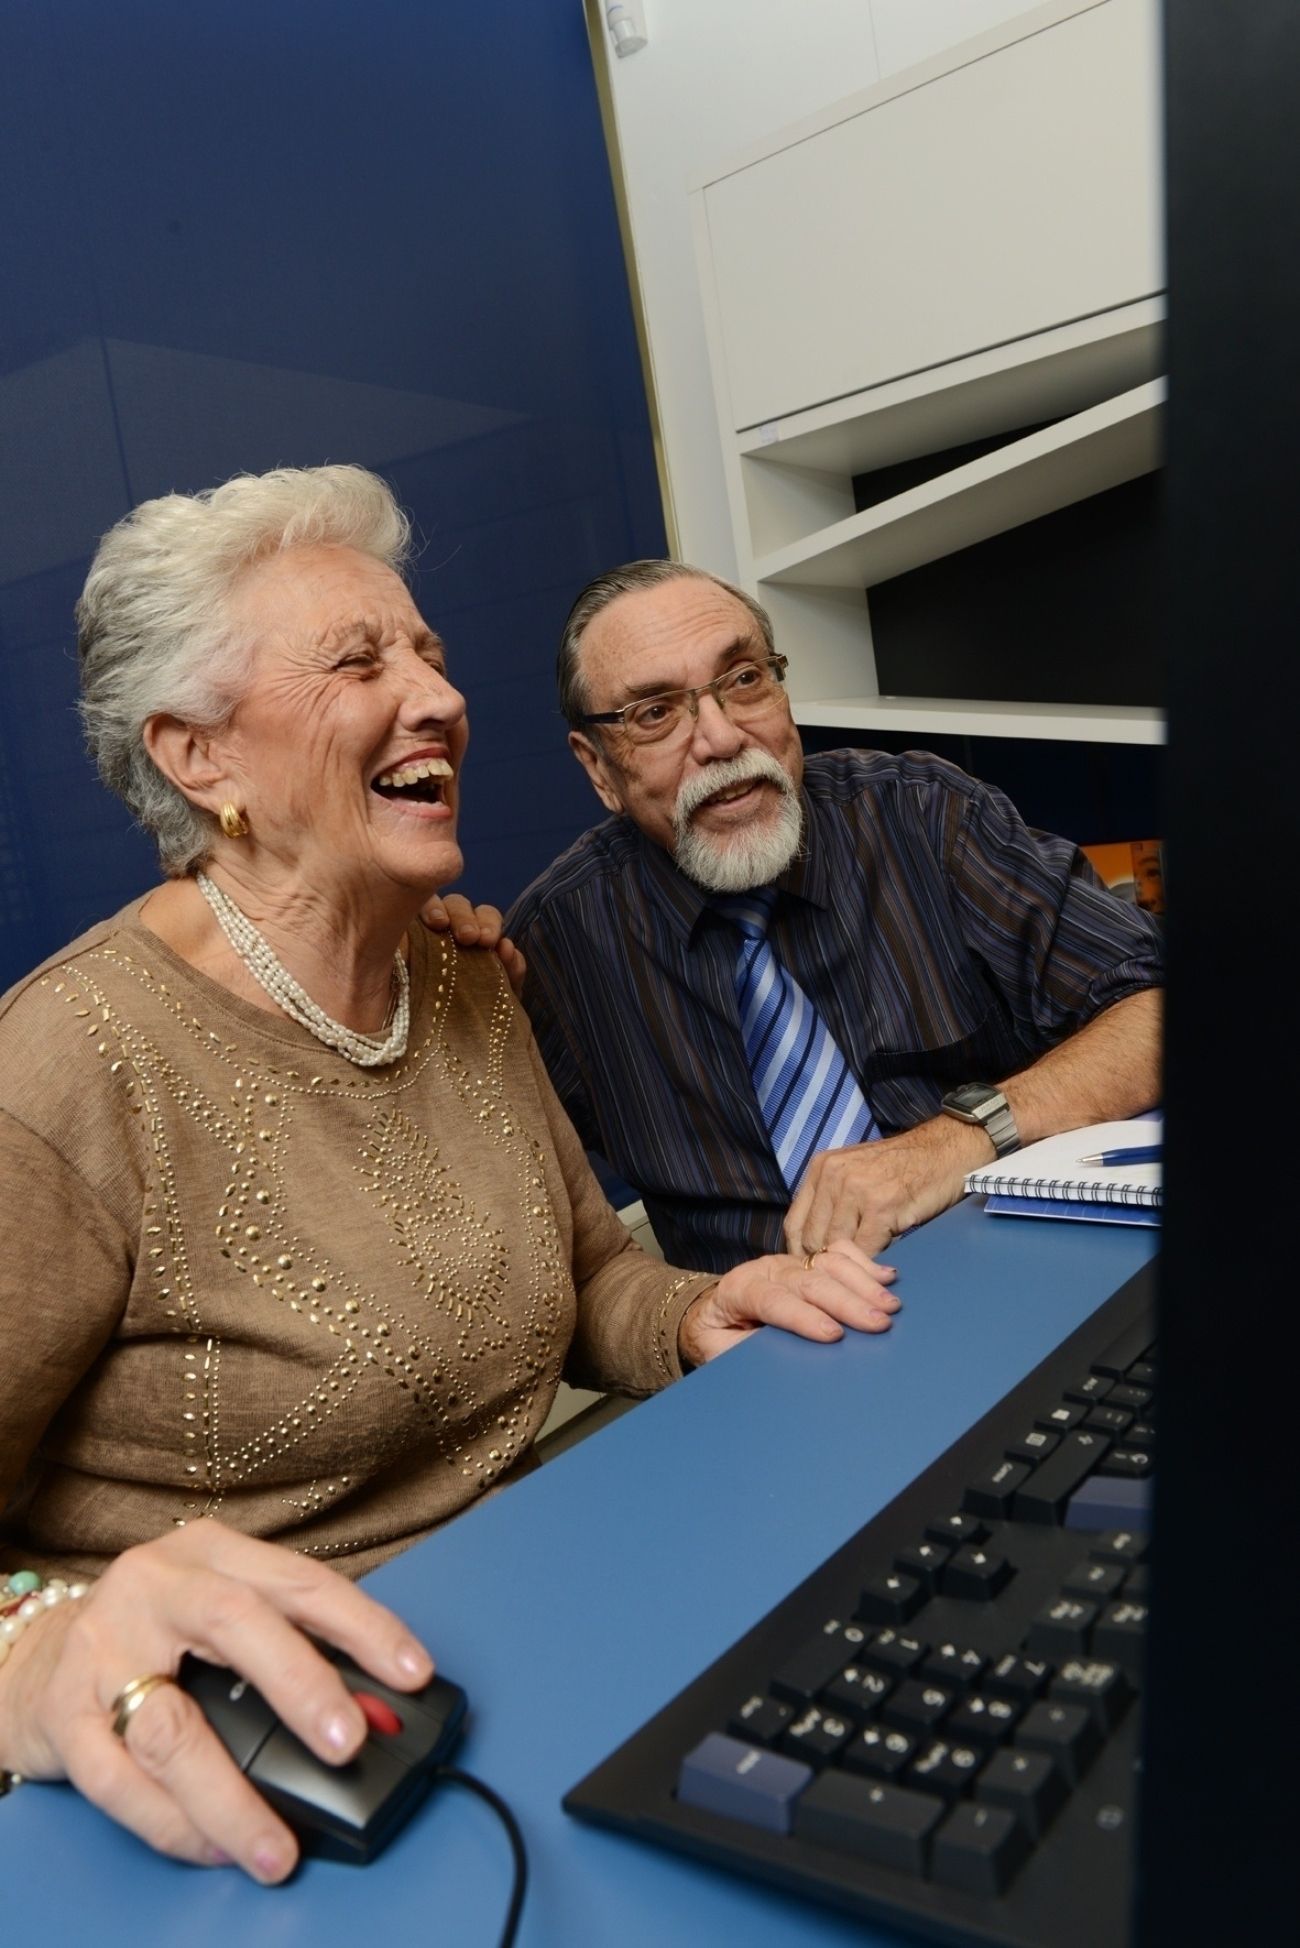 La estimulación de la memoria en talleres 'on line' para mayores revierte el deterioro cognitivo. Foto: Europa Press